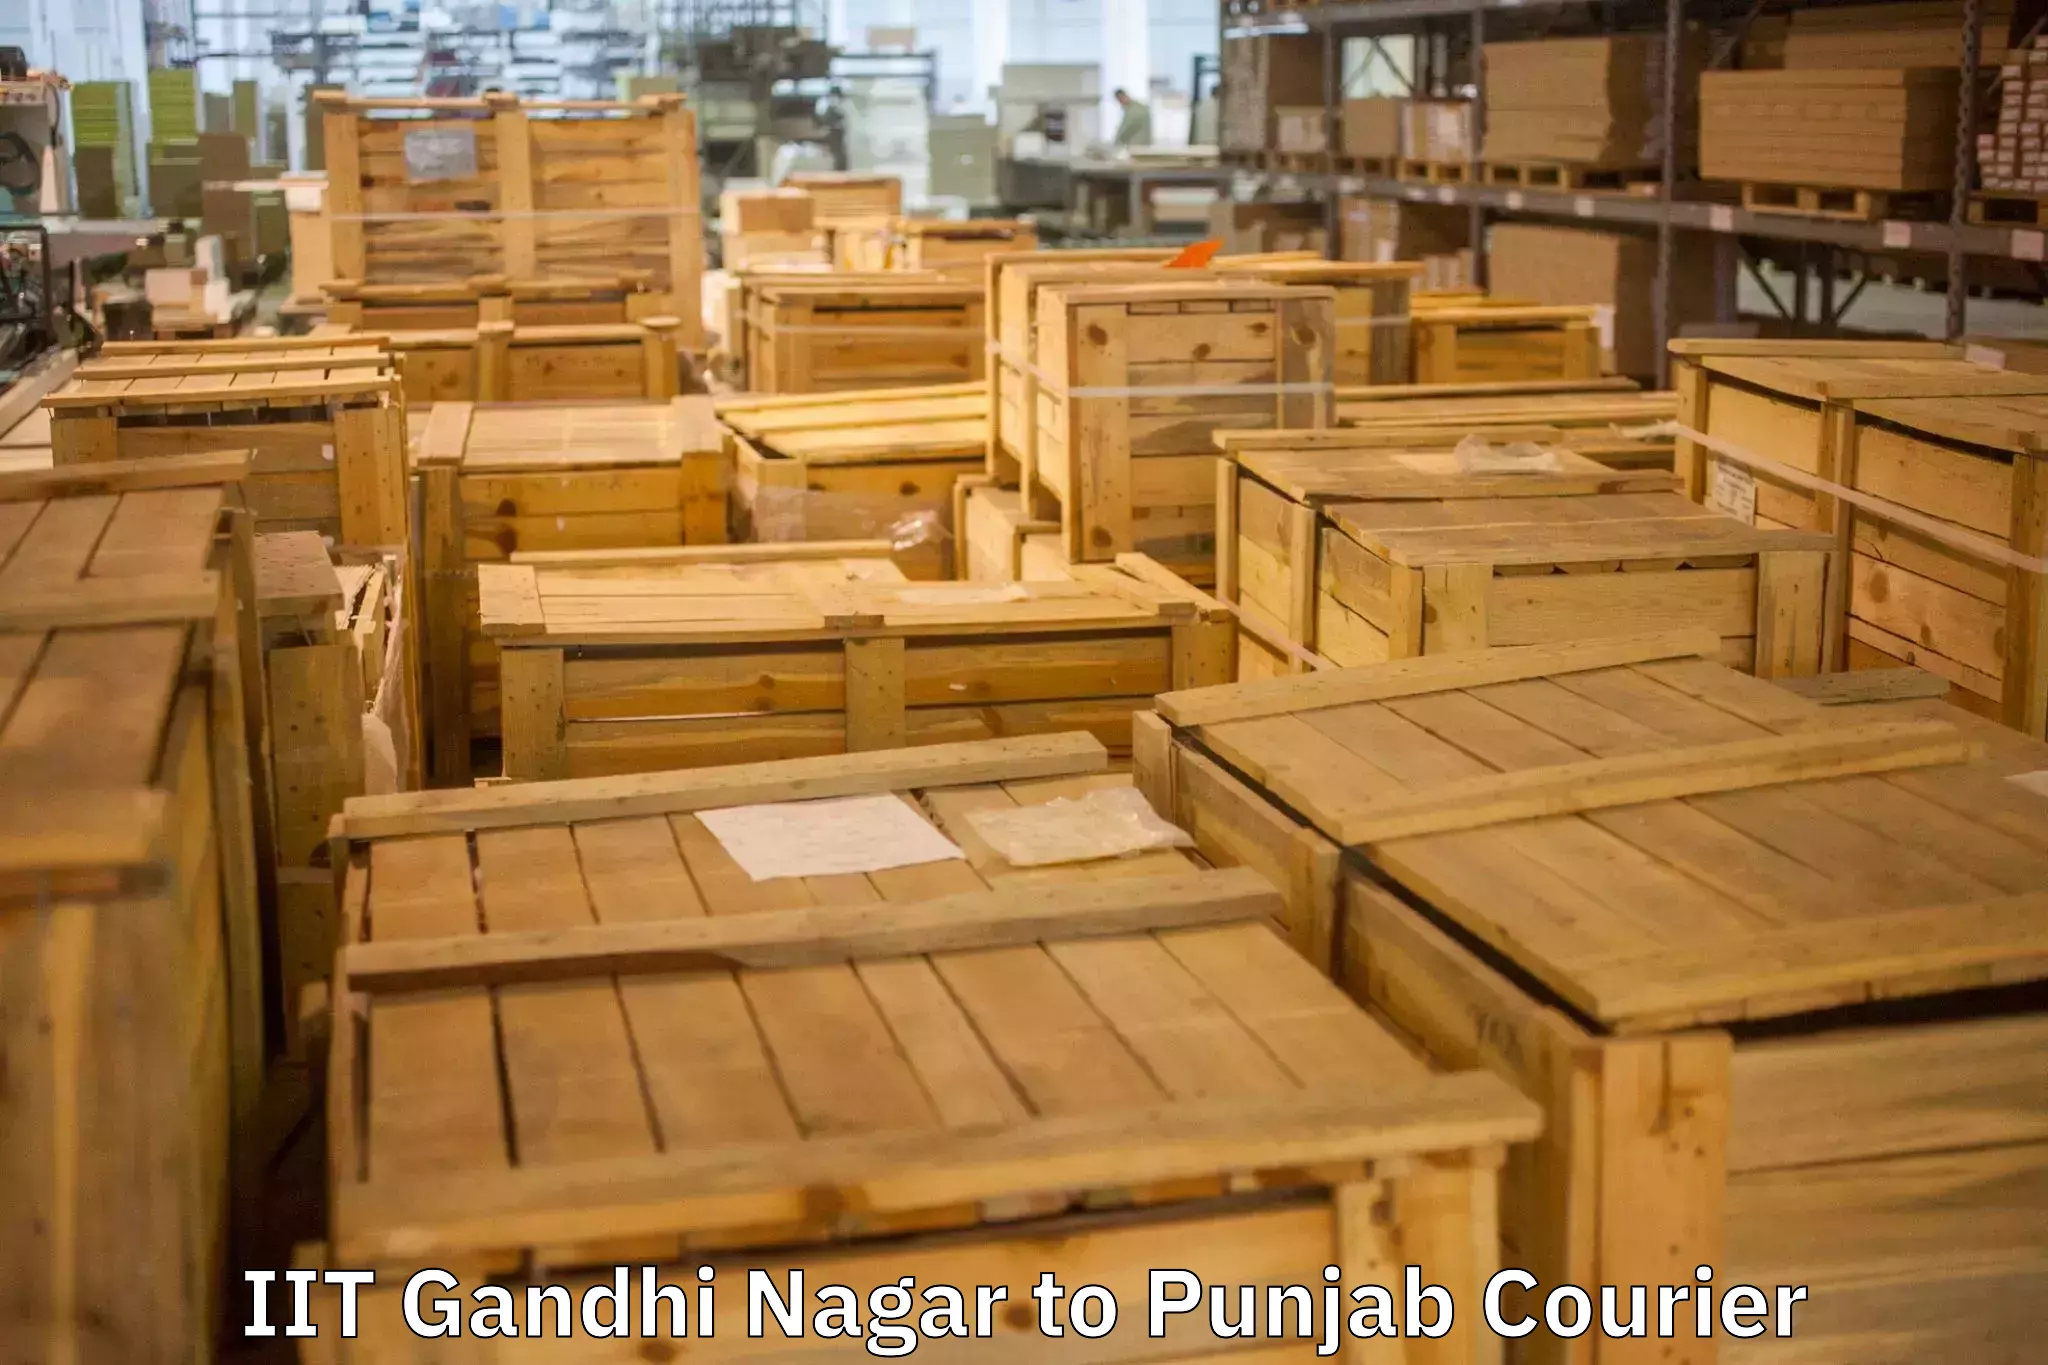 Residential moving services in IIT Gandhi Nagar to Punjab